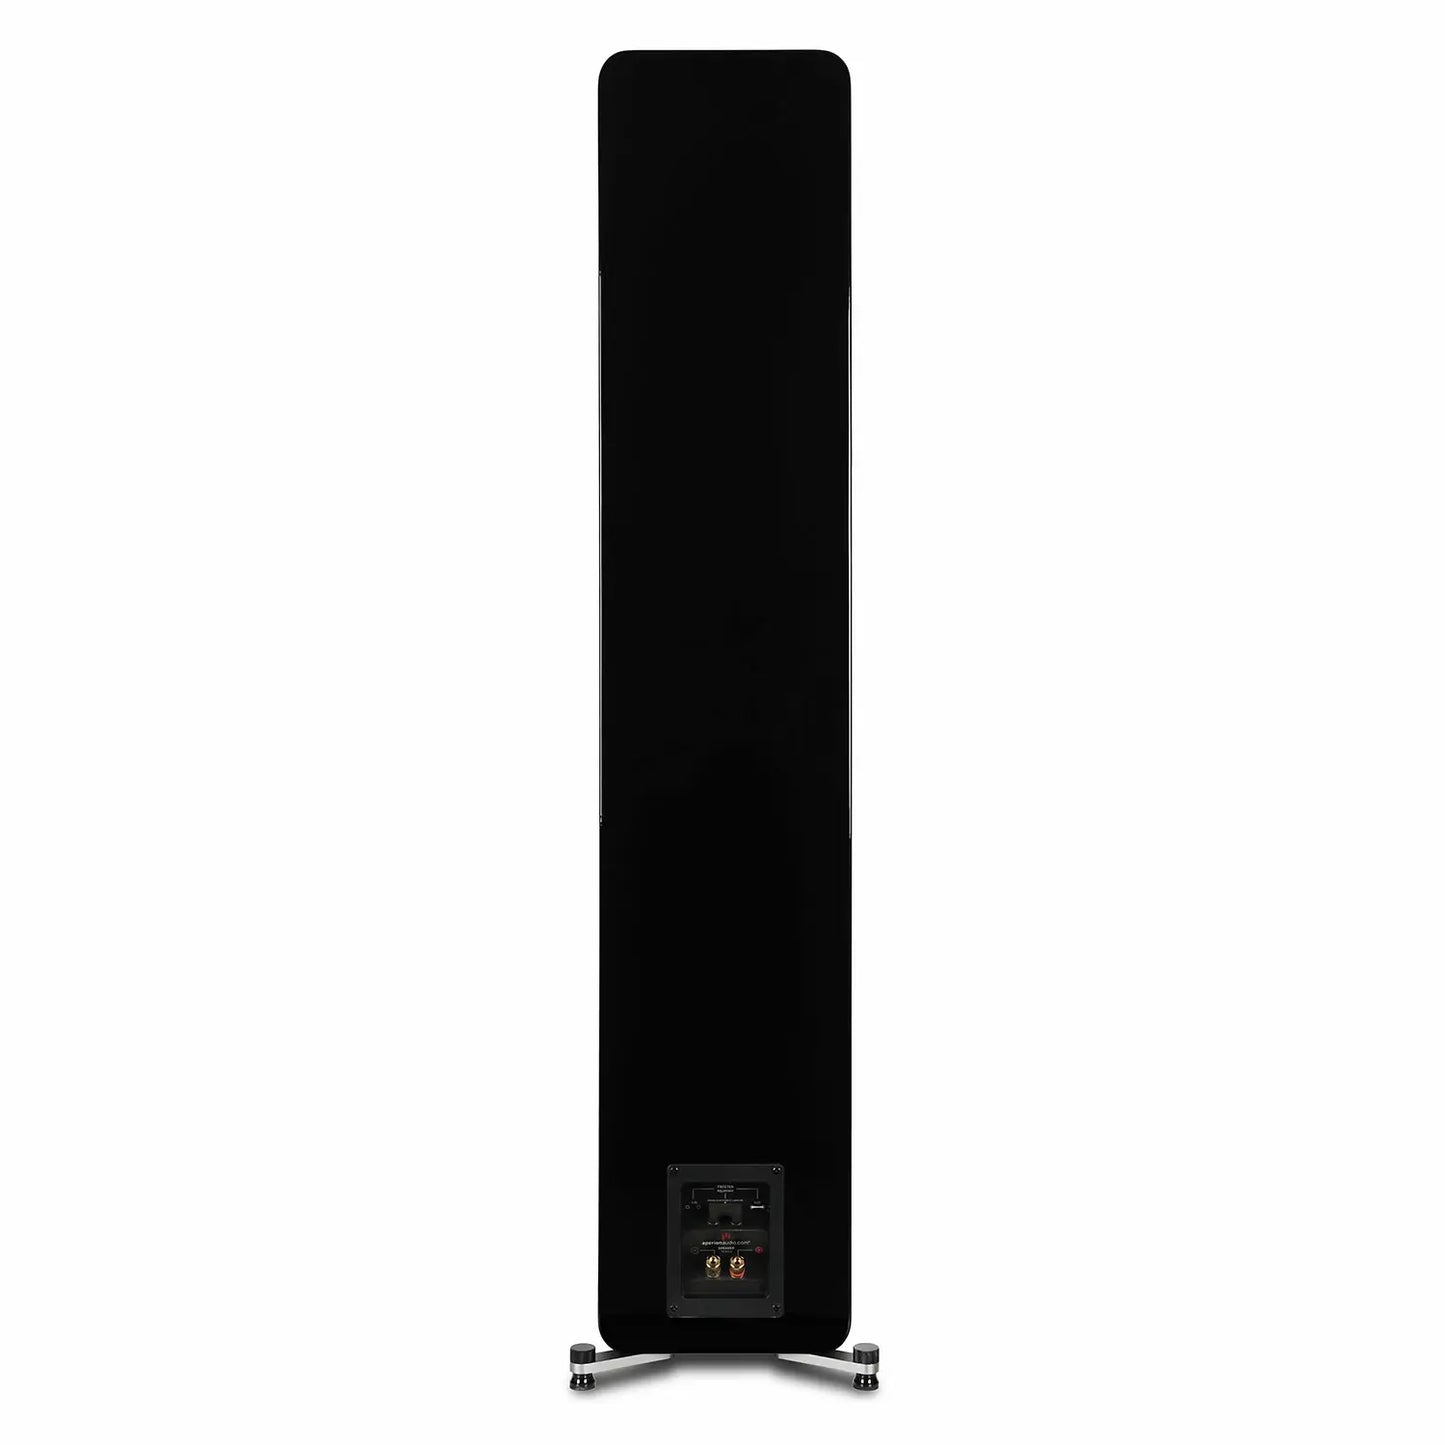 Aperion-Novus-N6T-Dual-6.5"-2-Way-Floorstanding-Tower-Speaker-GlossBlack-Backside-aperionaudio